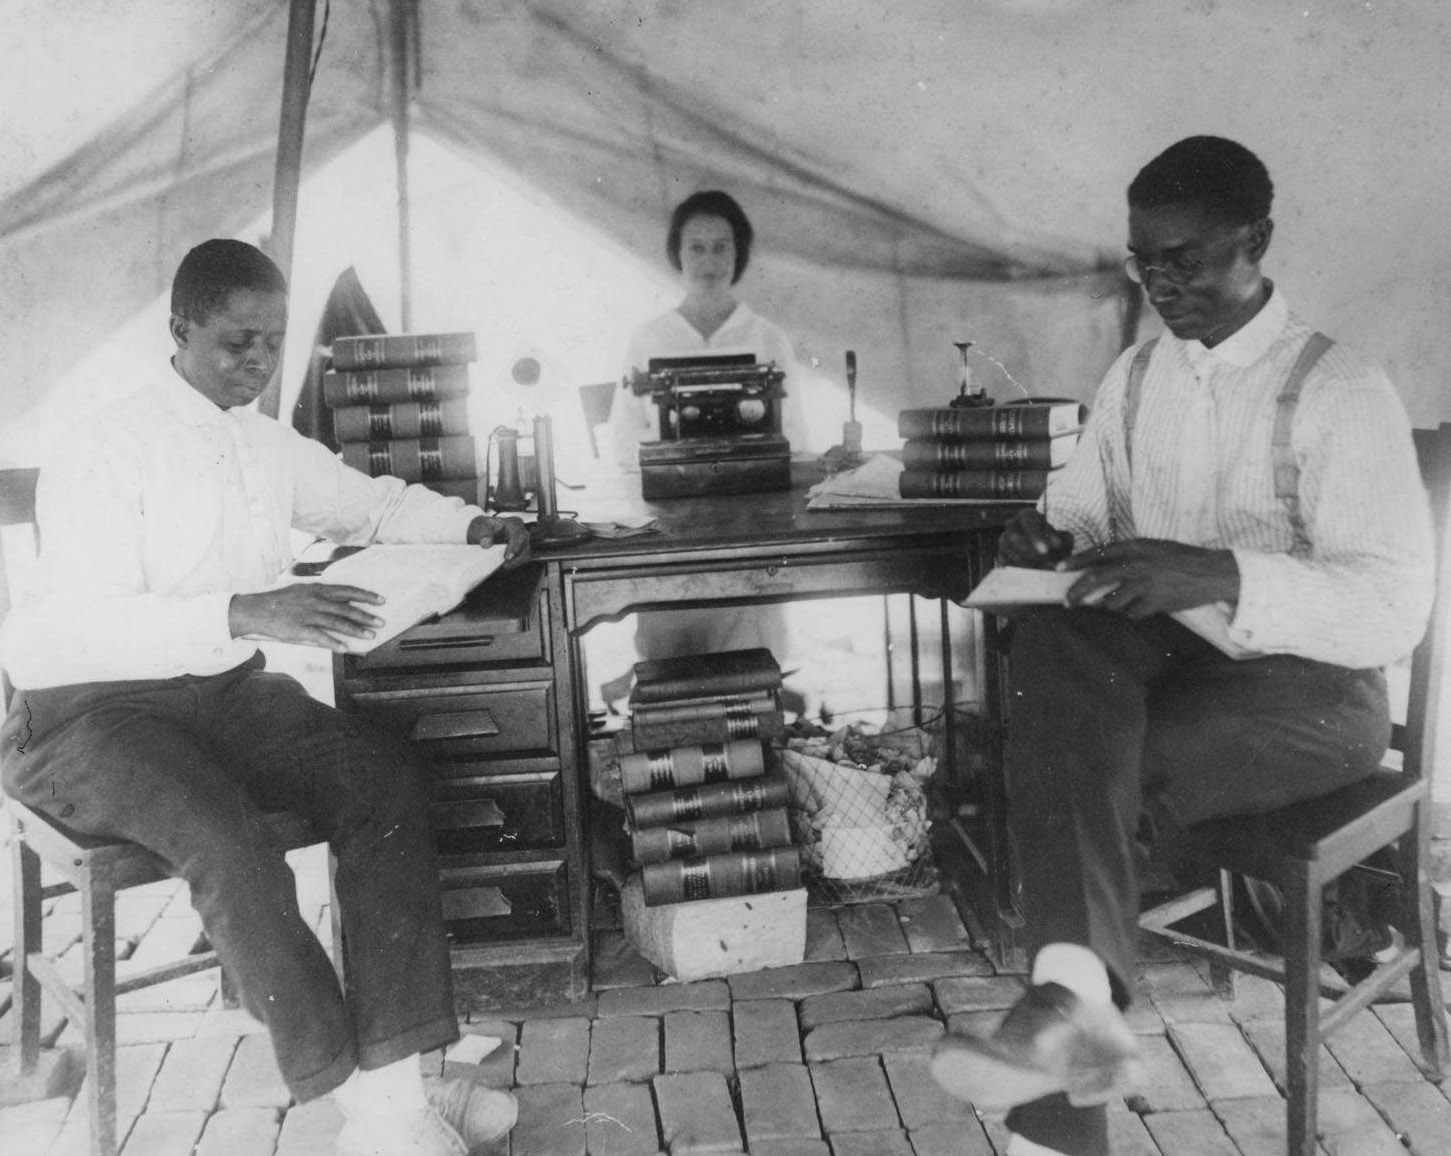 Après le massacre racial de Tulsa en 1921, l'avocat B.C. Franklin (à droite) a installé son cabinet d'avocats dans une tente. Sur la gauche se trouve I. H. Spears, l'associé juridique de Franklin. Ces hommes ont œuvré pour empêcher la dépossession des habitants de Greenwood.